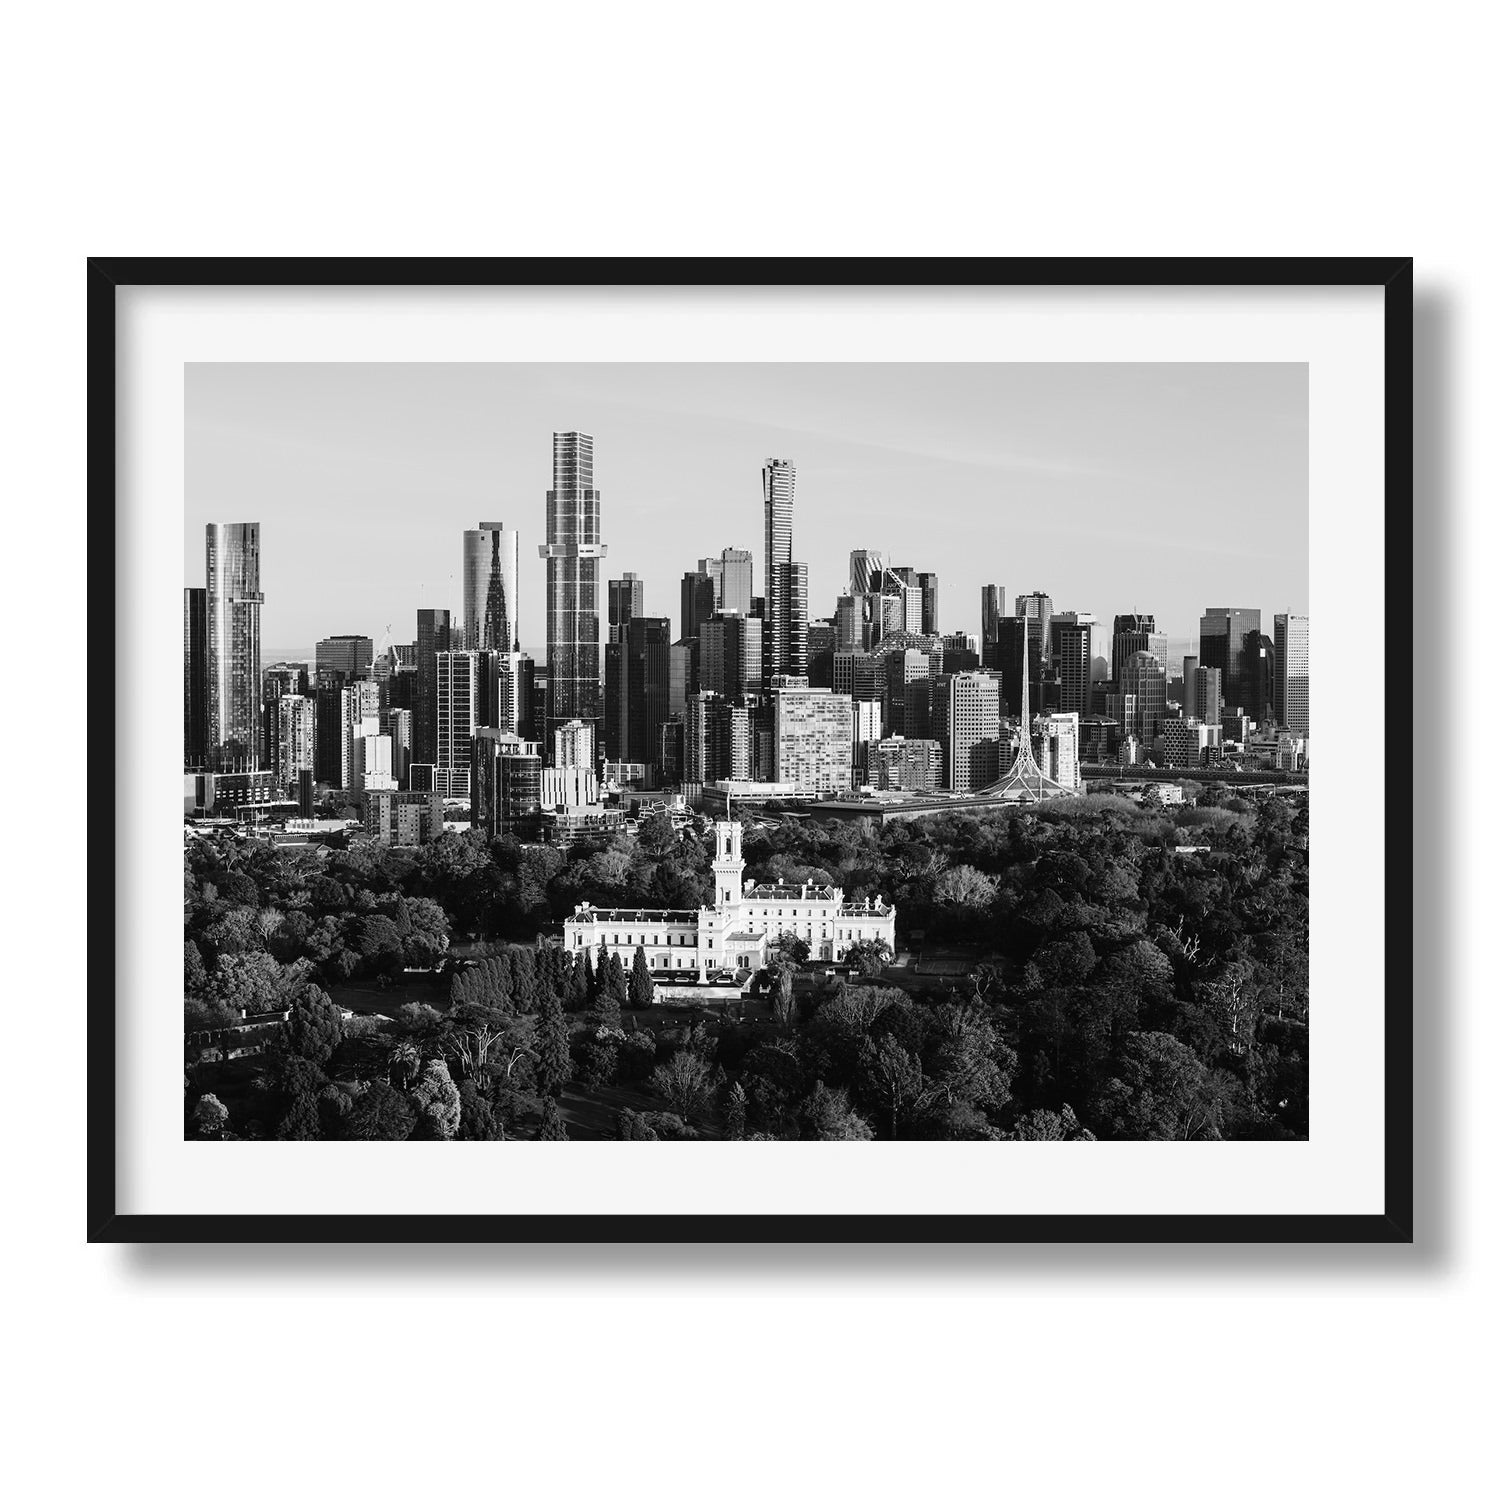 Government House Melbourne CBD Black & White - Peter Yan Studio